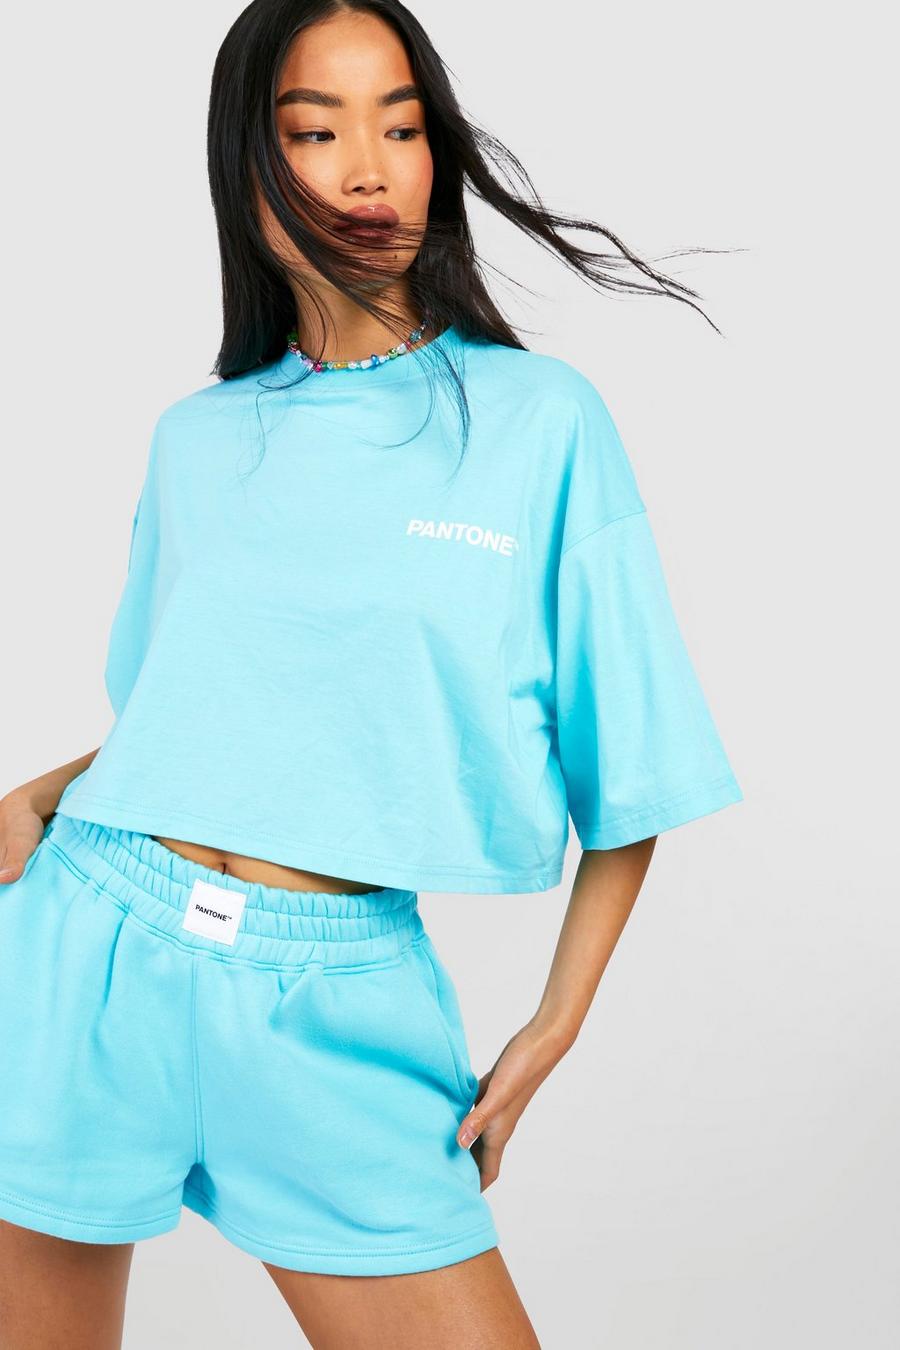 Aqua Pantone Cropped Boxy Oversized T-Shirt